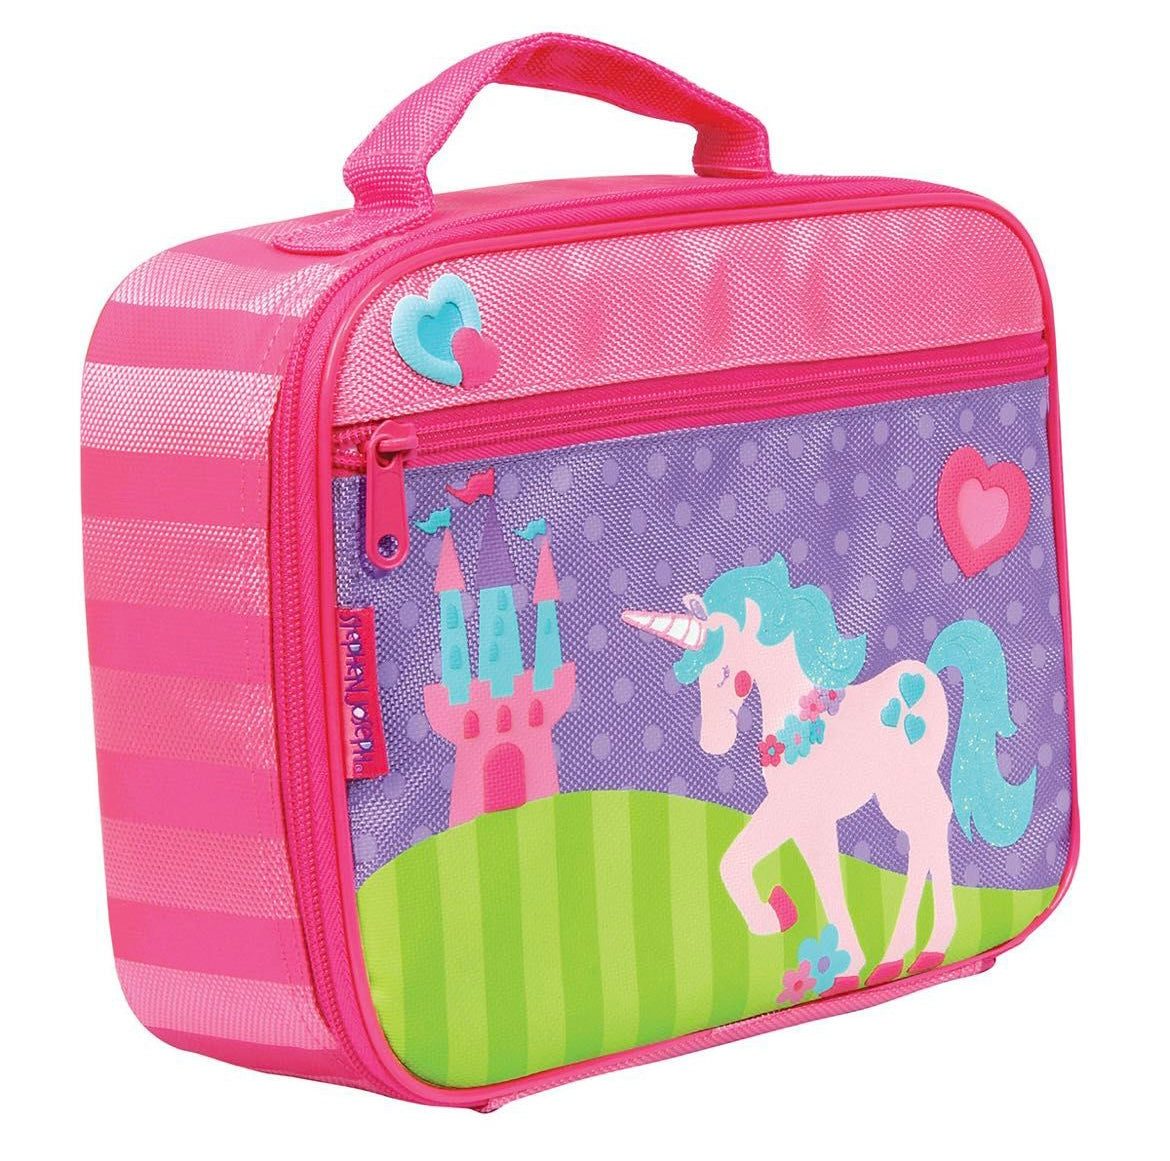 Personalized Lunchbox - Unicorn